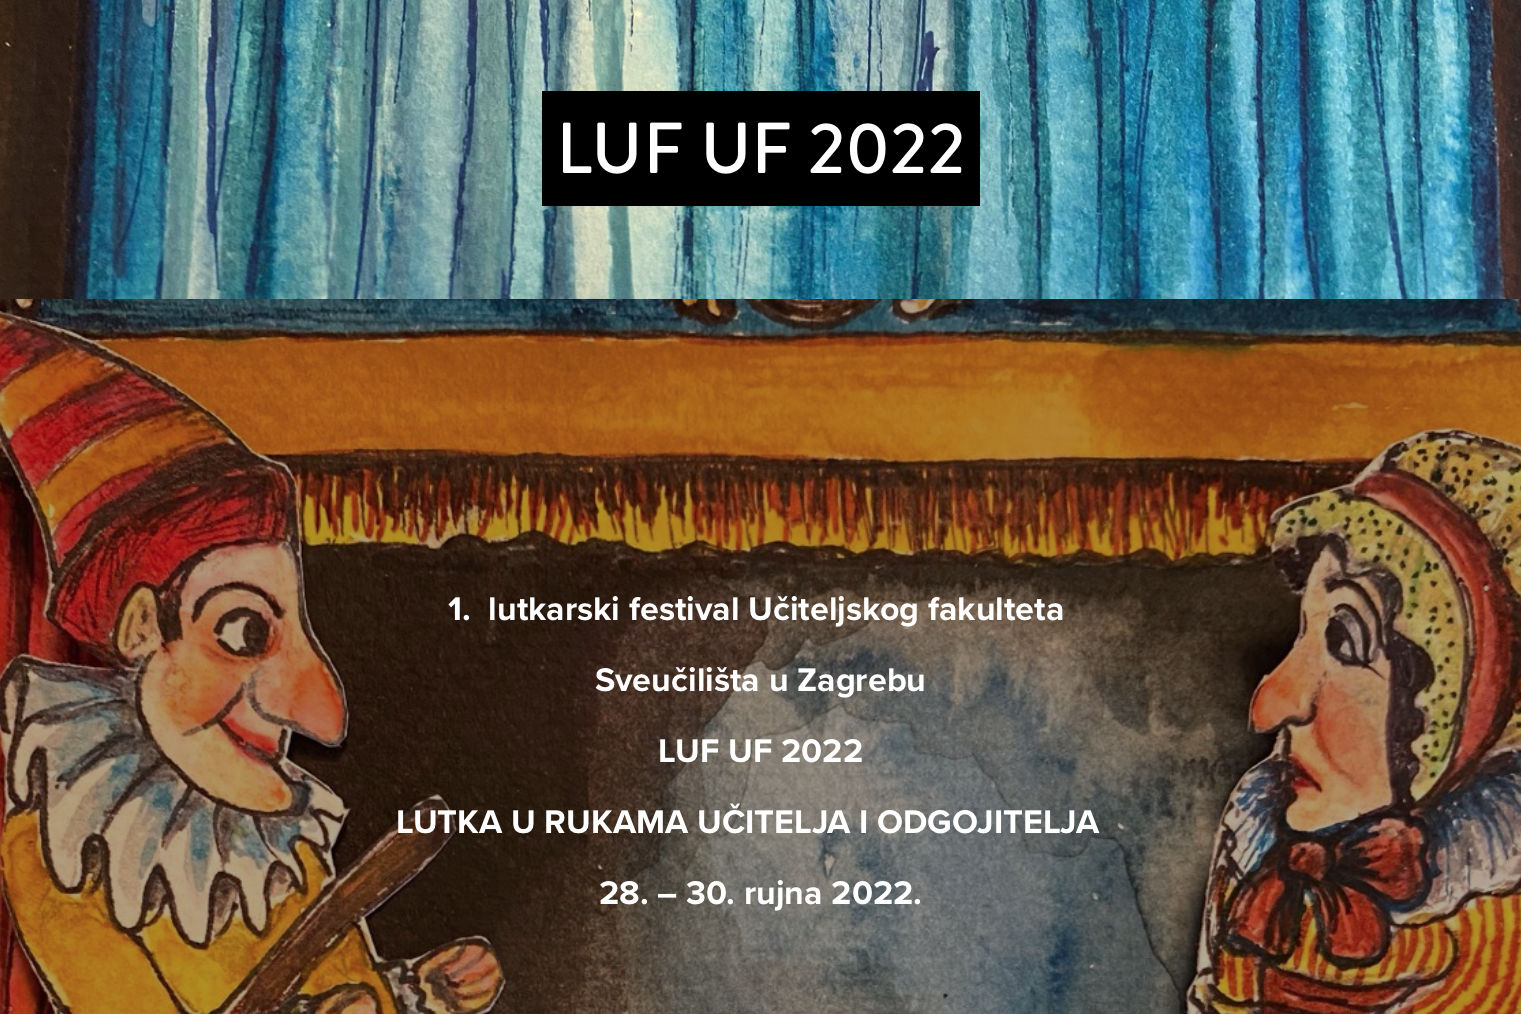 LUF UF 2022